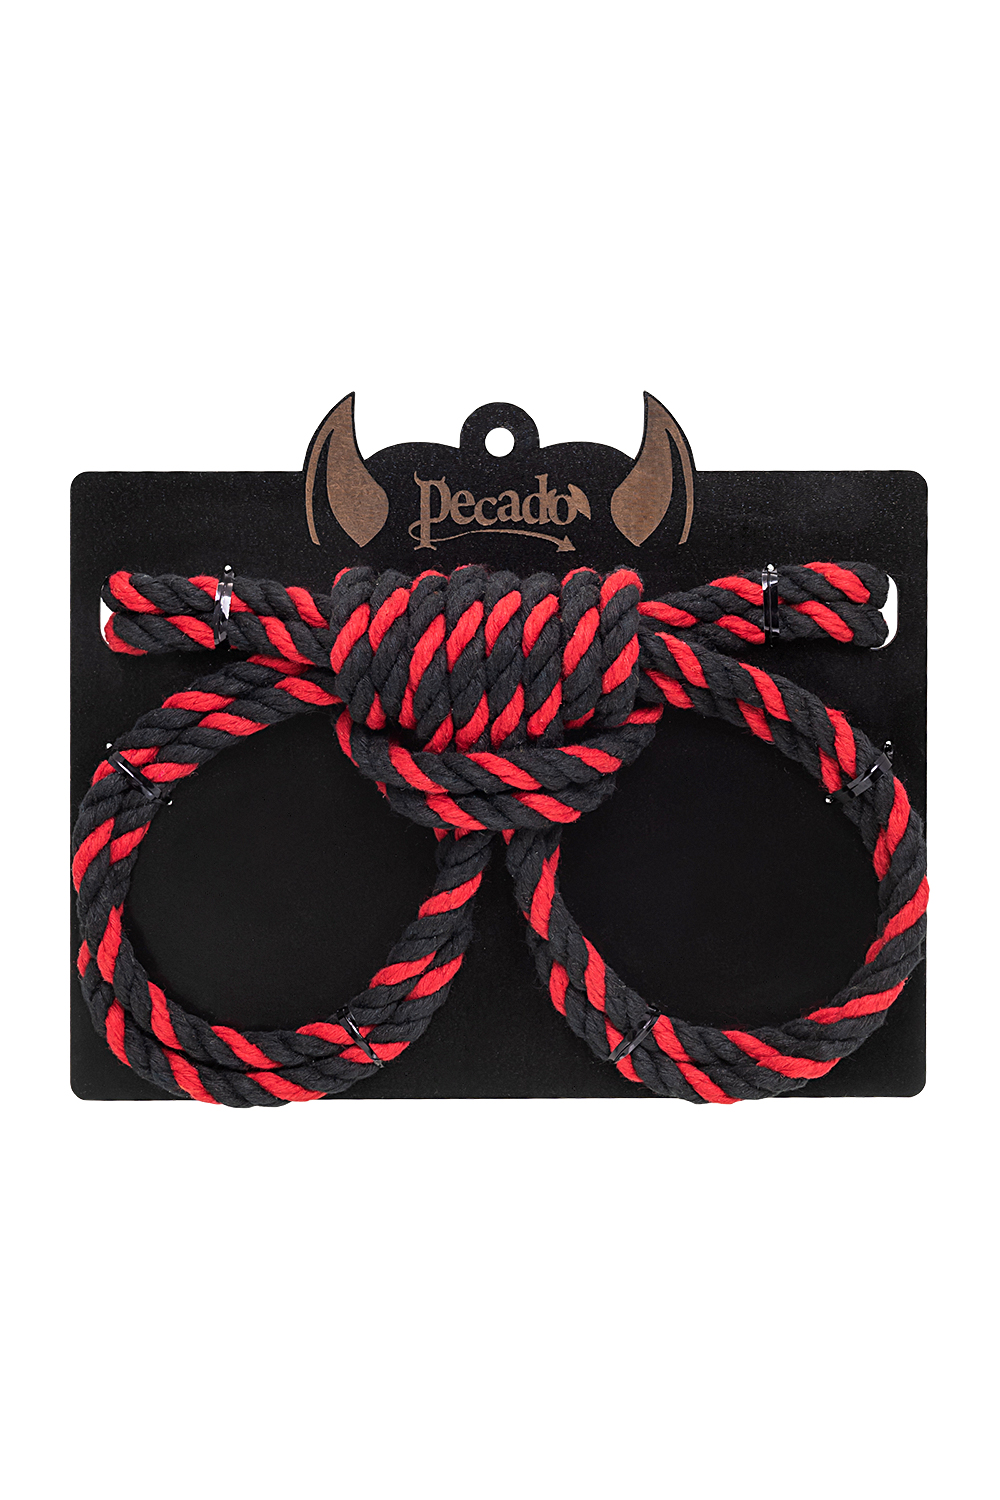 Наручники-оковы Pecado BDSM Узел-омега из хлопковой веревки черно-красные 3,5 м